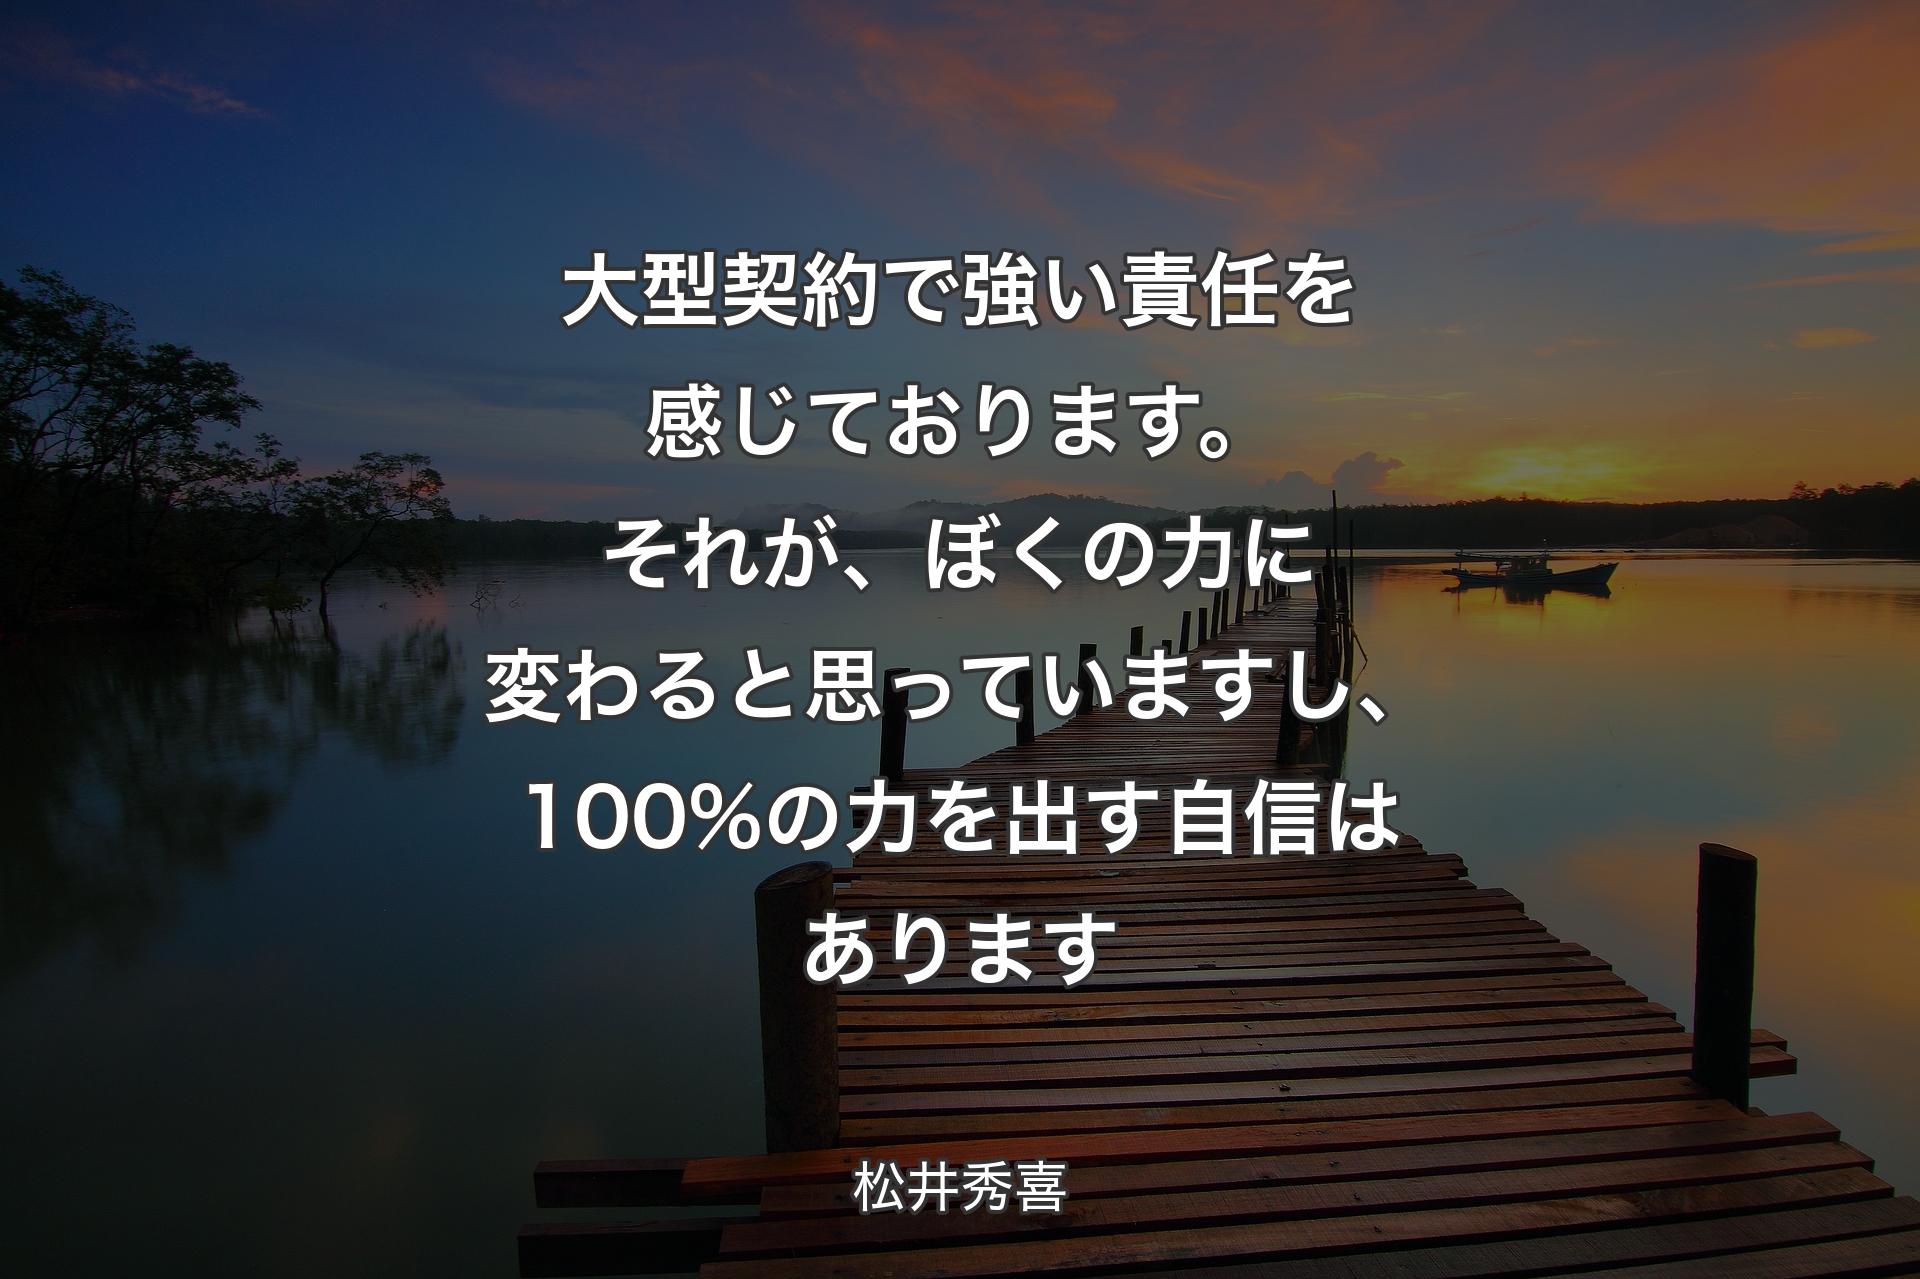 【背景3】大型契約で強い責任を感じております。それが、ぼくの力に変わると思っていますし、100%の力を出す自信はあります - 松井秀喜